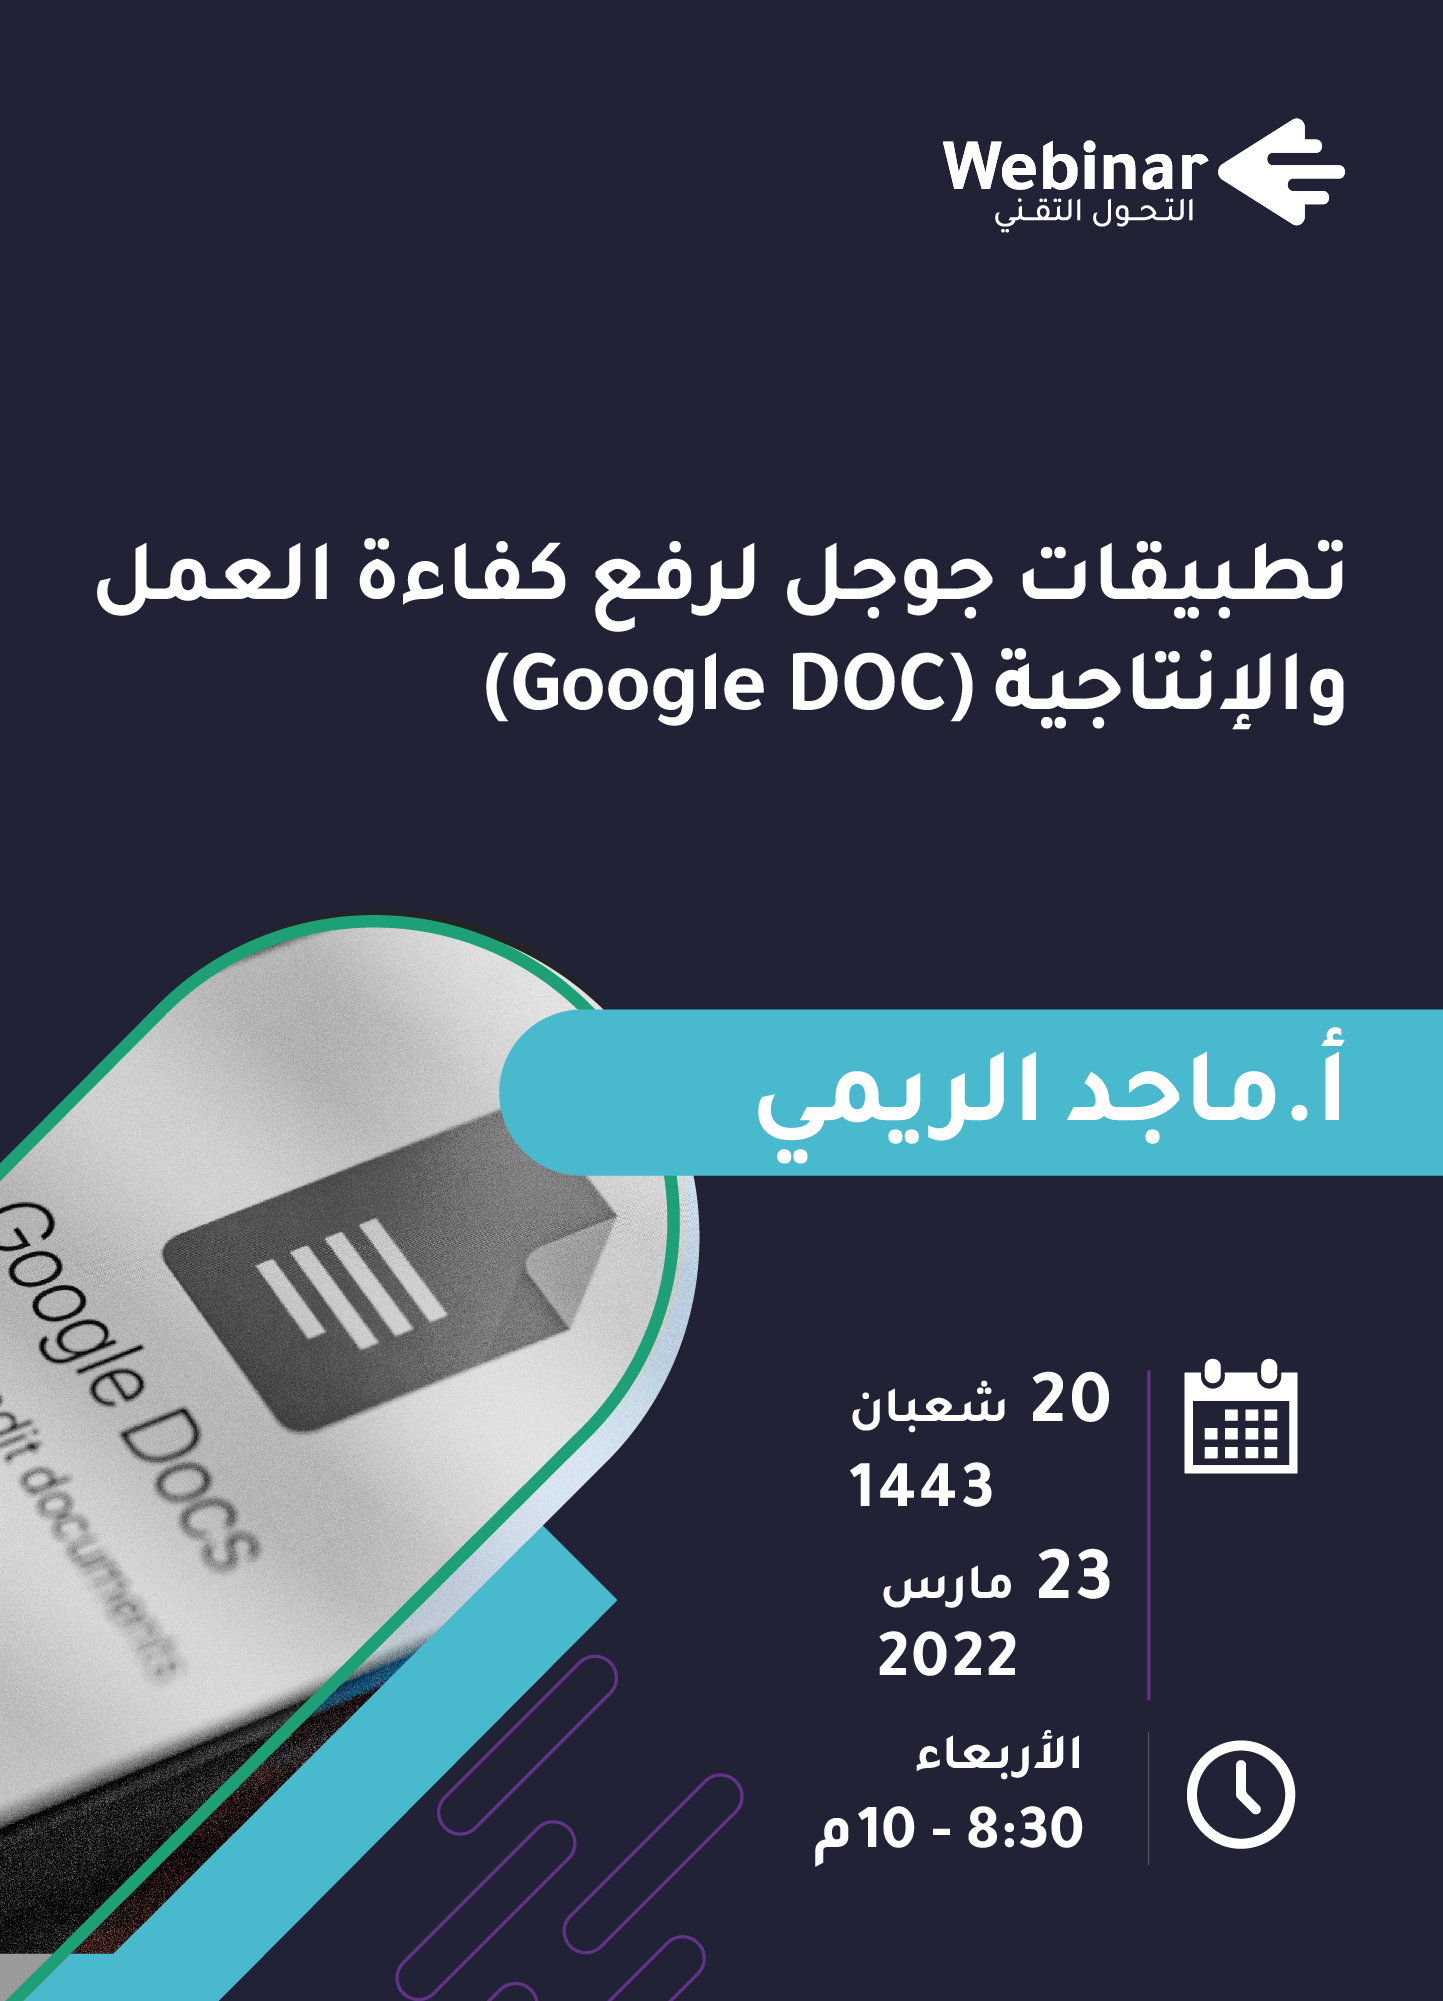 تطبيقات جوجل لرفع كفاءة العمل والإنتاجية  ( Google DOC)